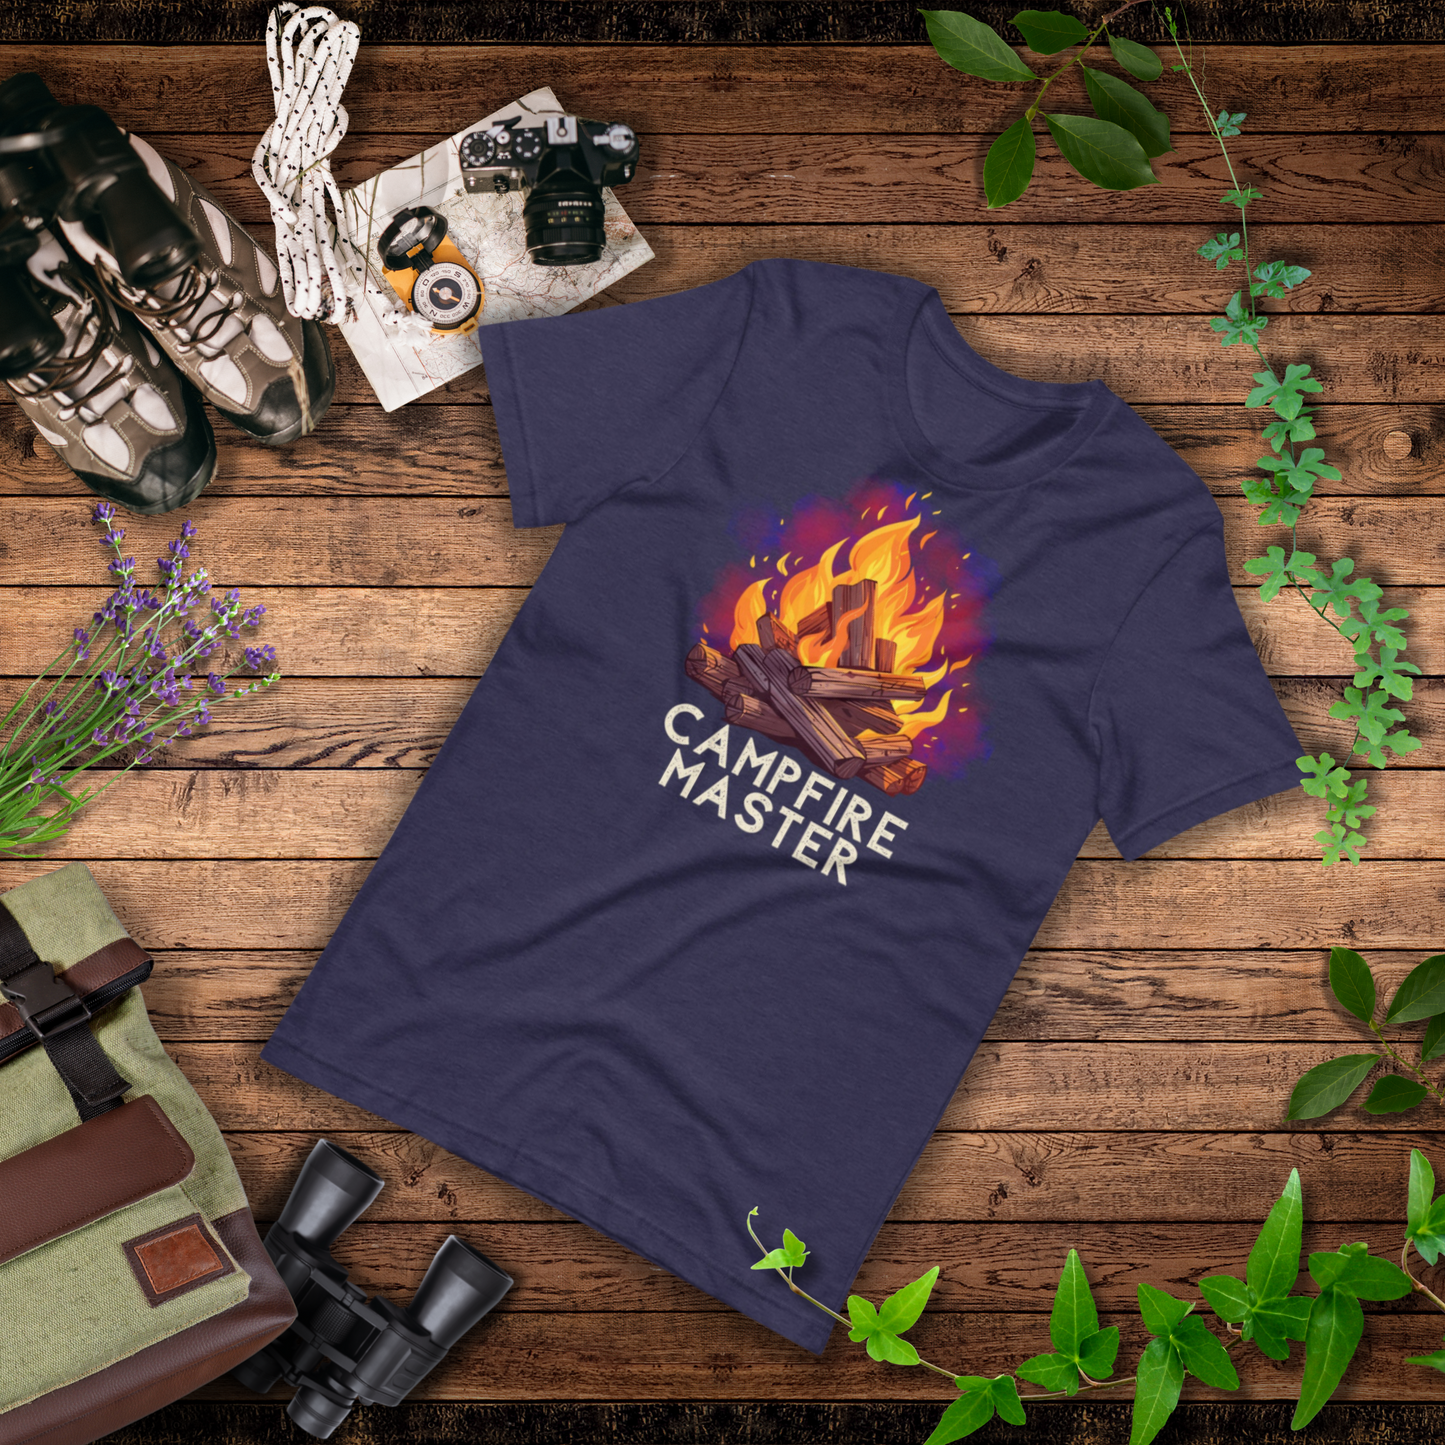 Campfire Master | Outdoorsy Camping T-shirt